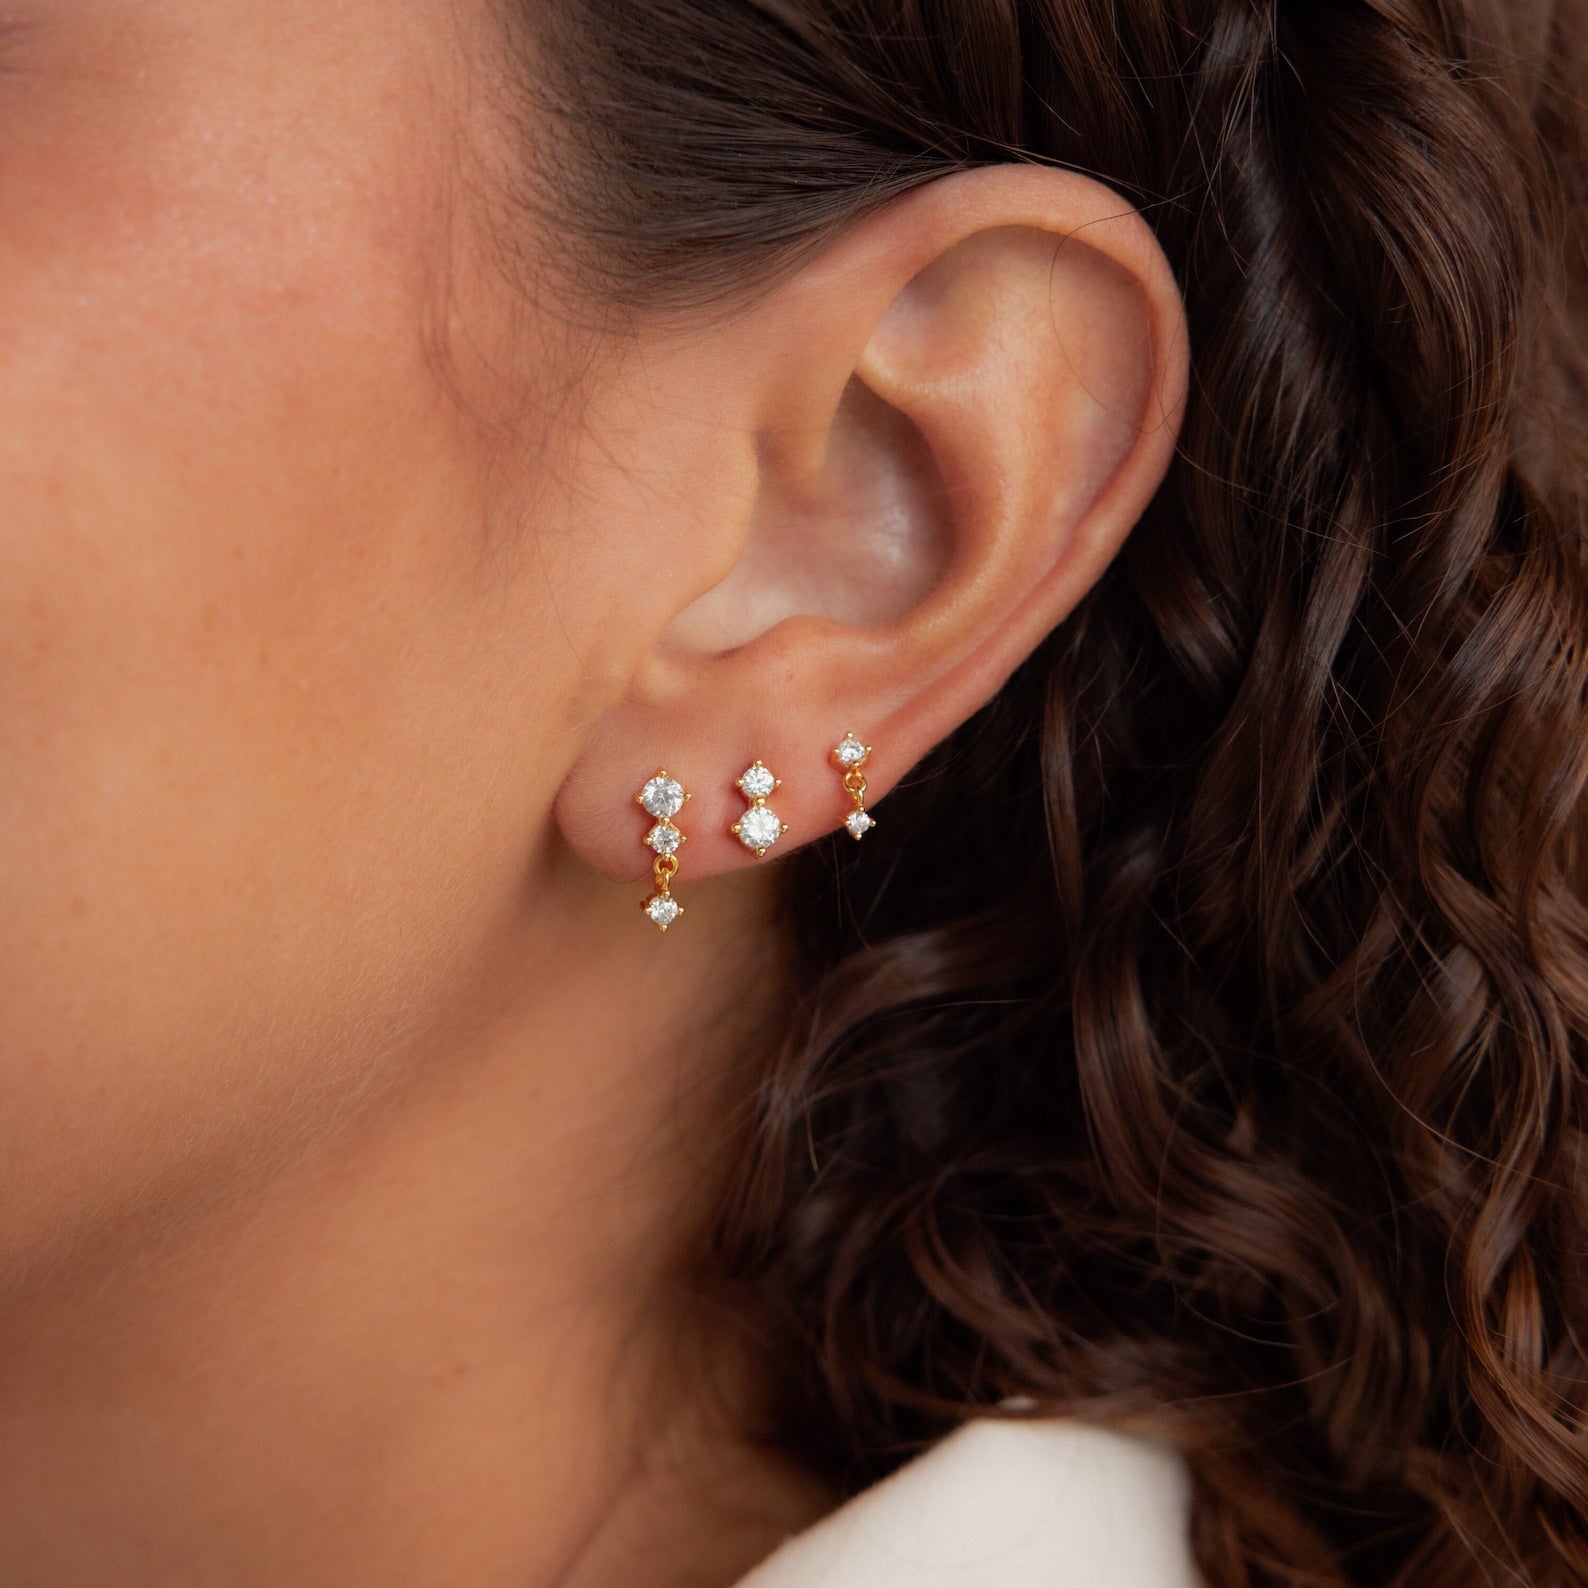 Buy Earring Set / Gold Earring Set Earring Stud Set Multiple Set Earrings  Dainty Zircon Earring Set Gift for Her Cute Earrings Online in India - Etsy